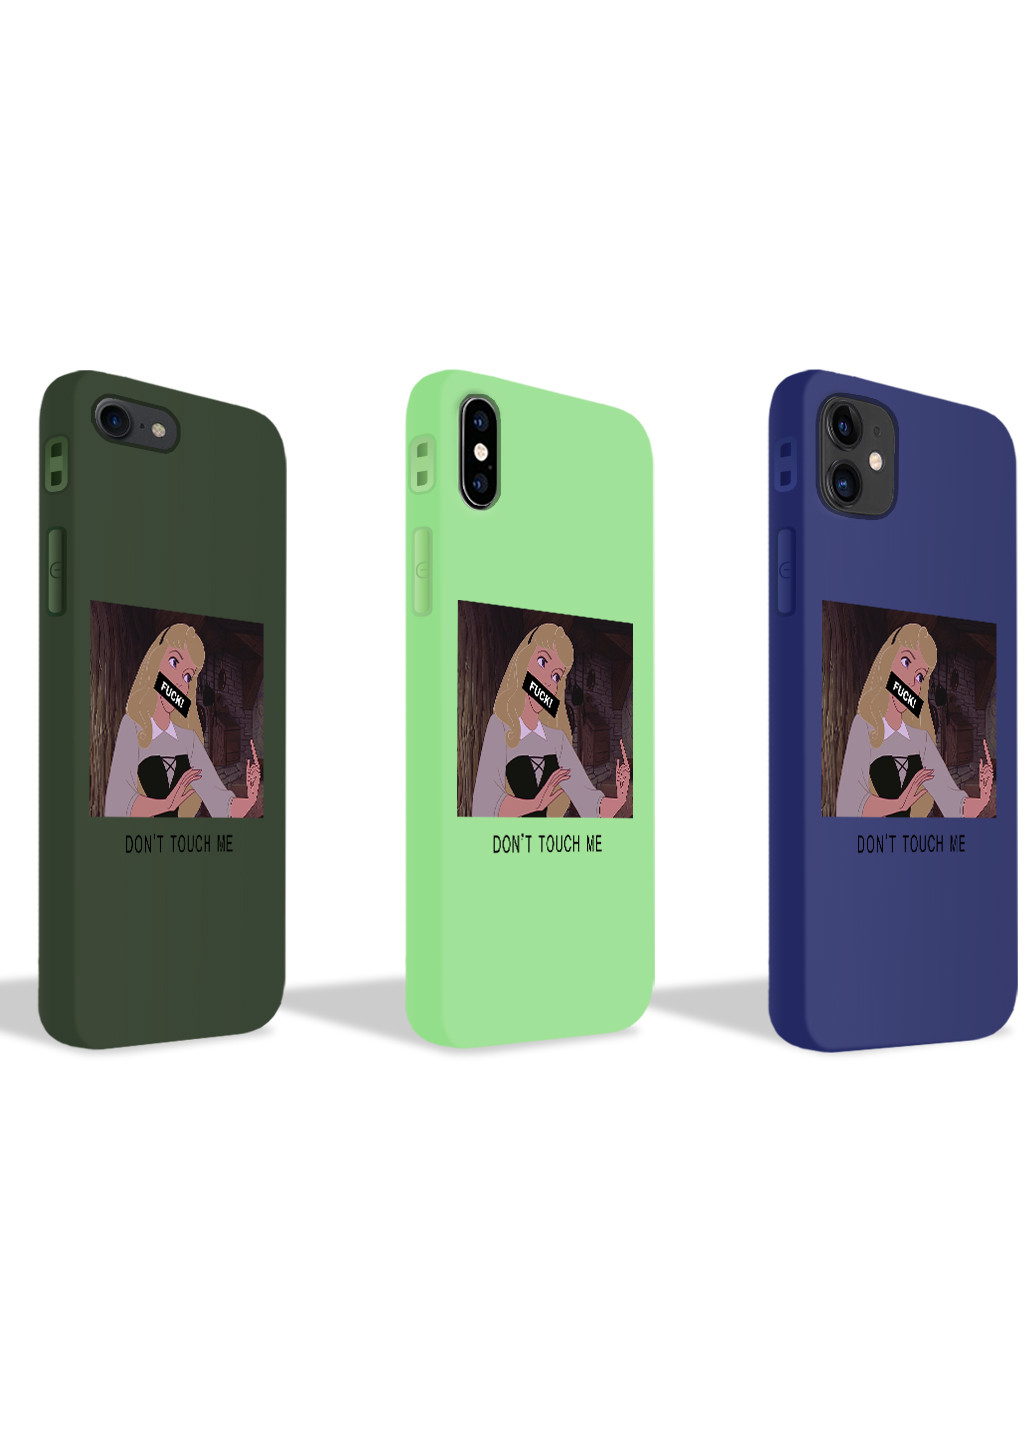 Чехол силиконовый Apple Iphone Xs Max Спящая красавица Дисней (Sleeping Beauty Disney) (8226-1431) MobiPrint (219777118)